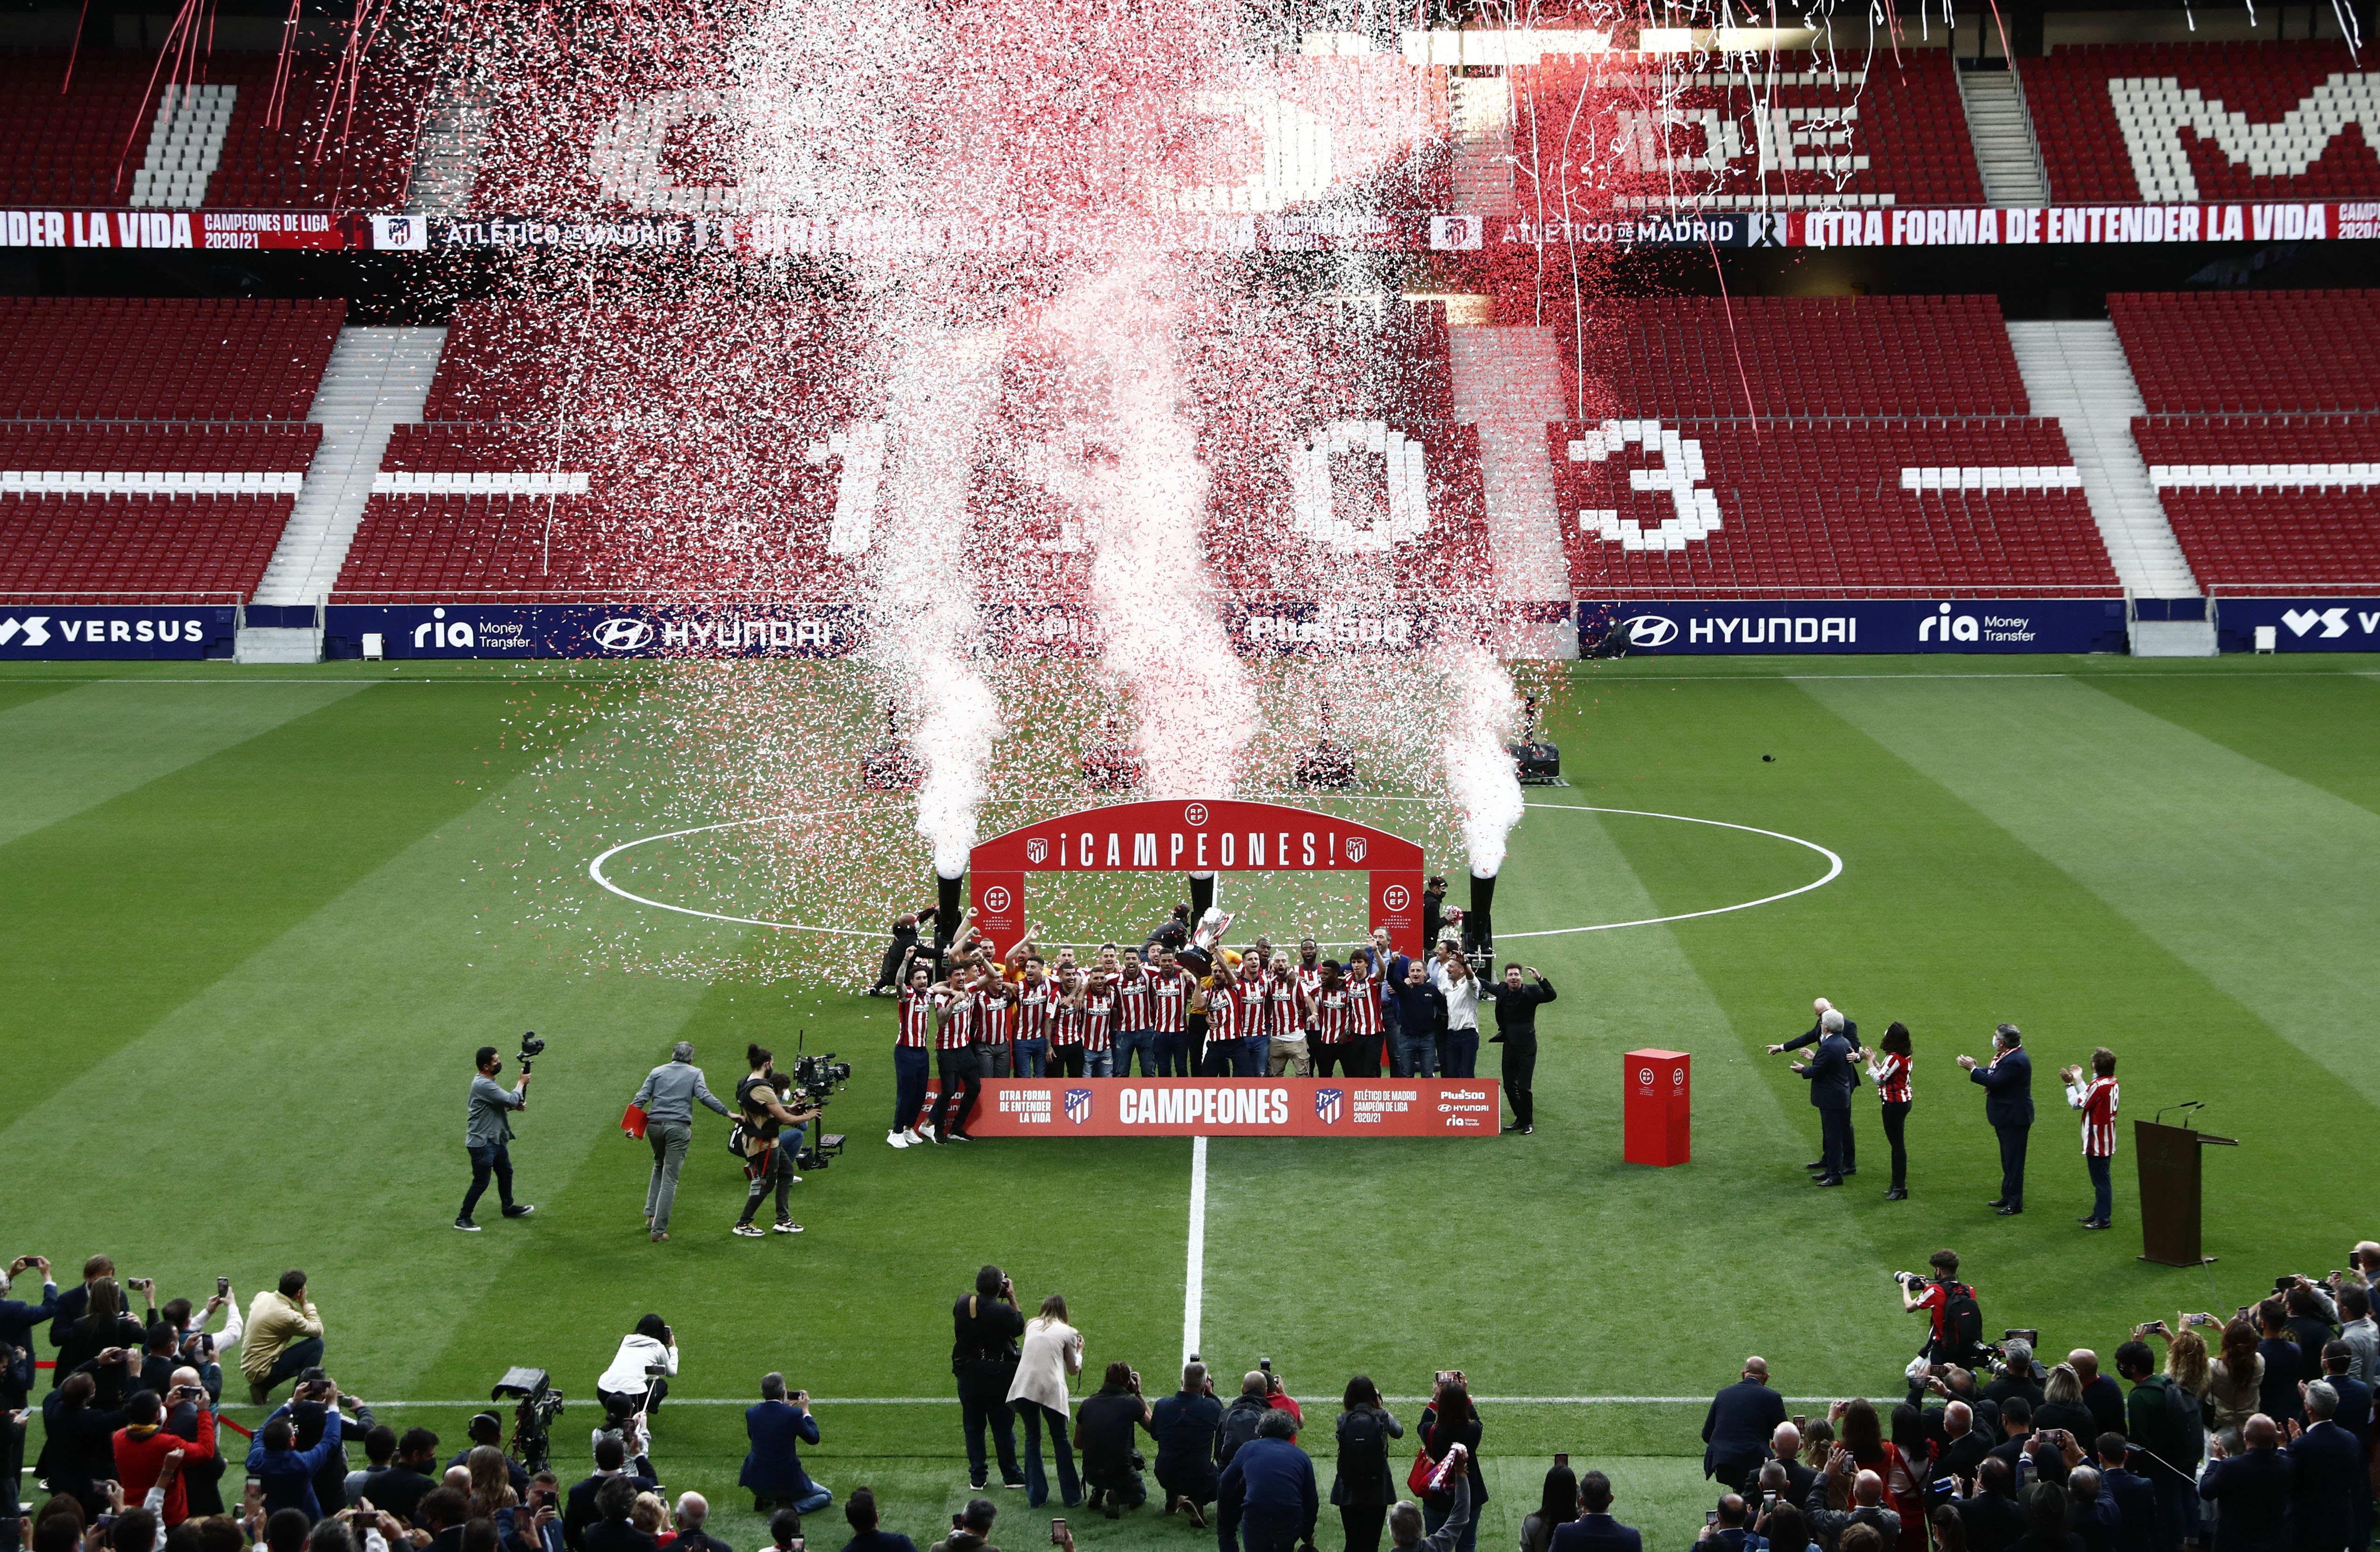 La Liga Santander - Atletico Madrid receive La Liga trophy